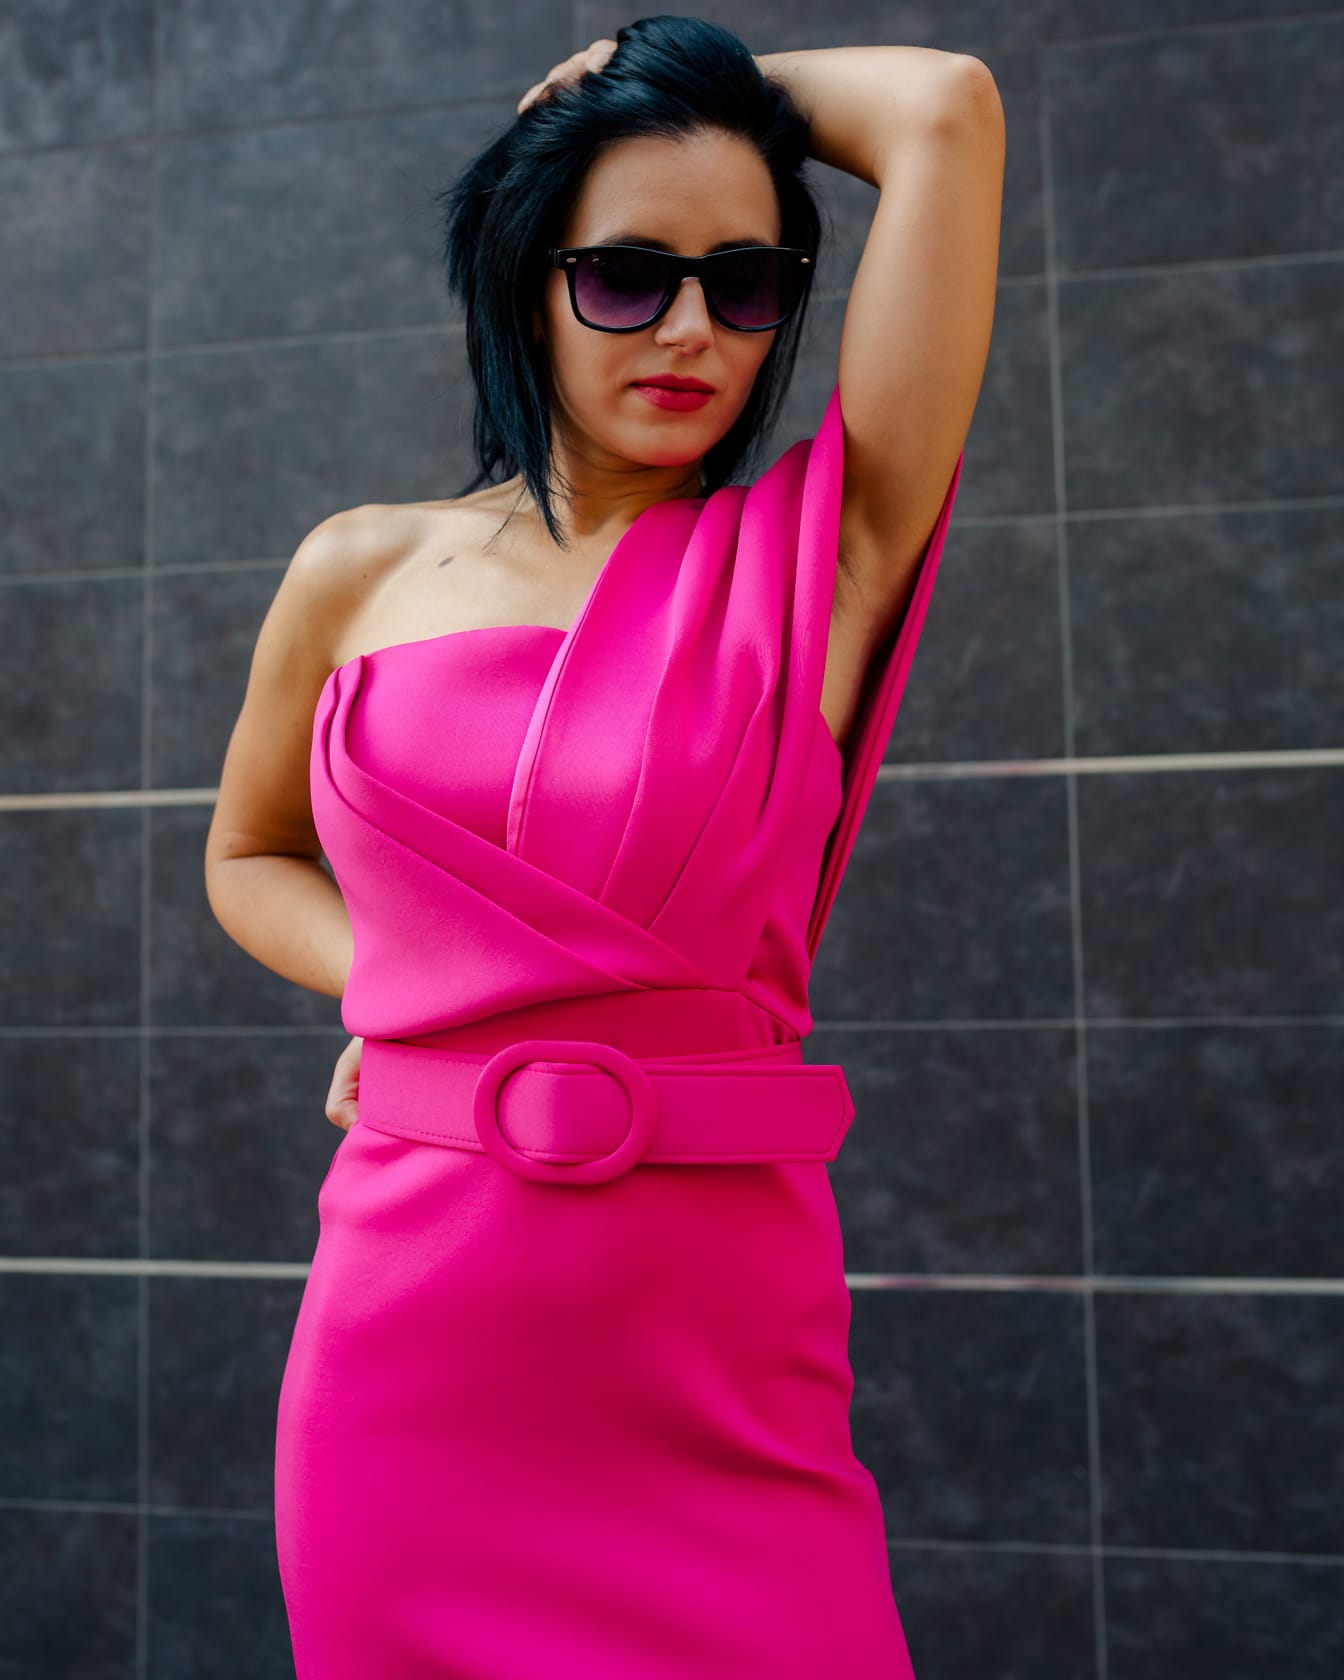 Oszałamiająco piękna bizneswoman uwodzicielsko pozuje z ręką we włosach w modnej nowej różowej sukience